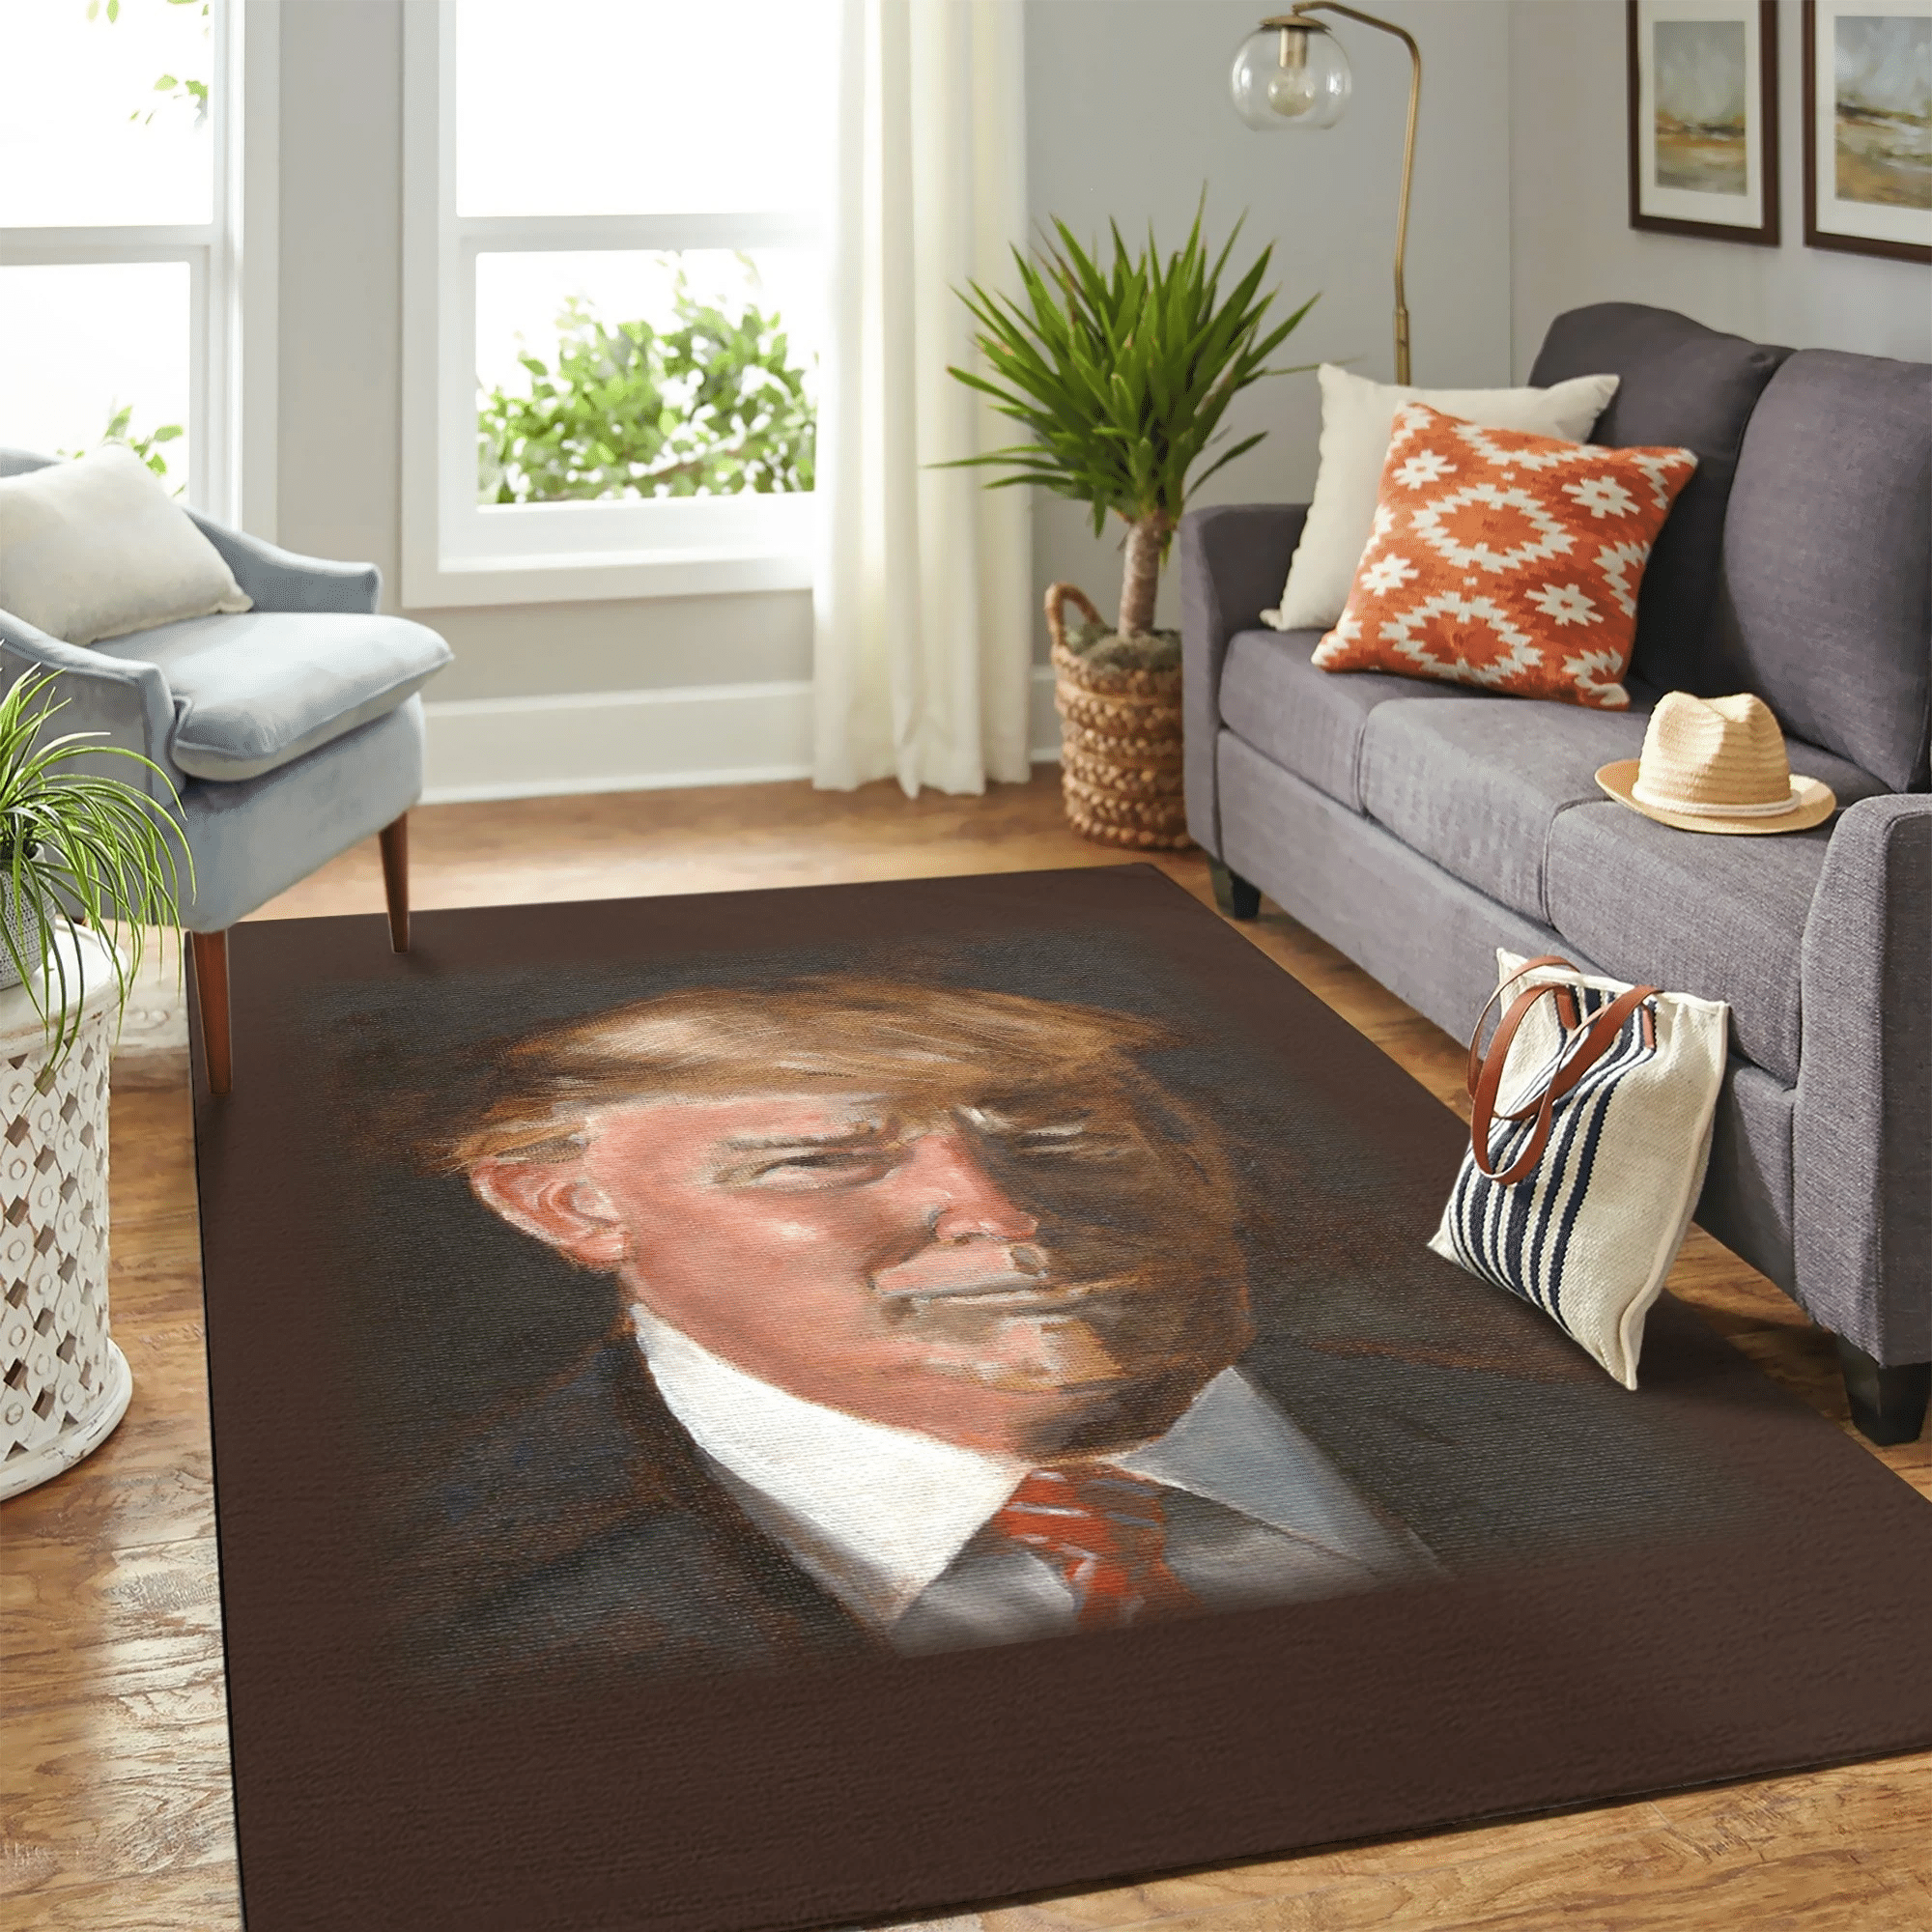 Donal Trump Carpet Floor Area Rug Chrismas Gift - Indoor Outdoor Rugs 1